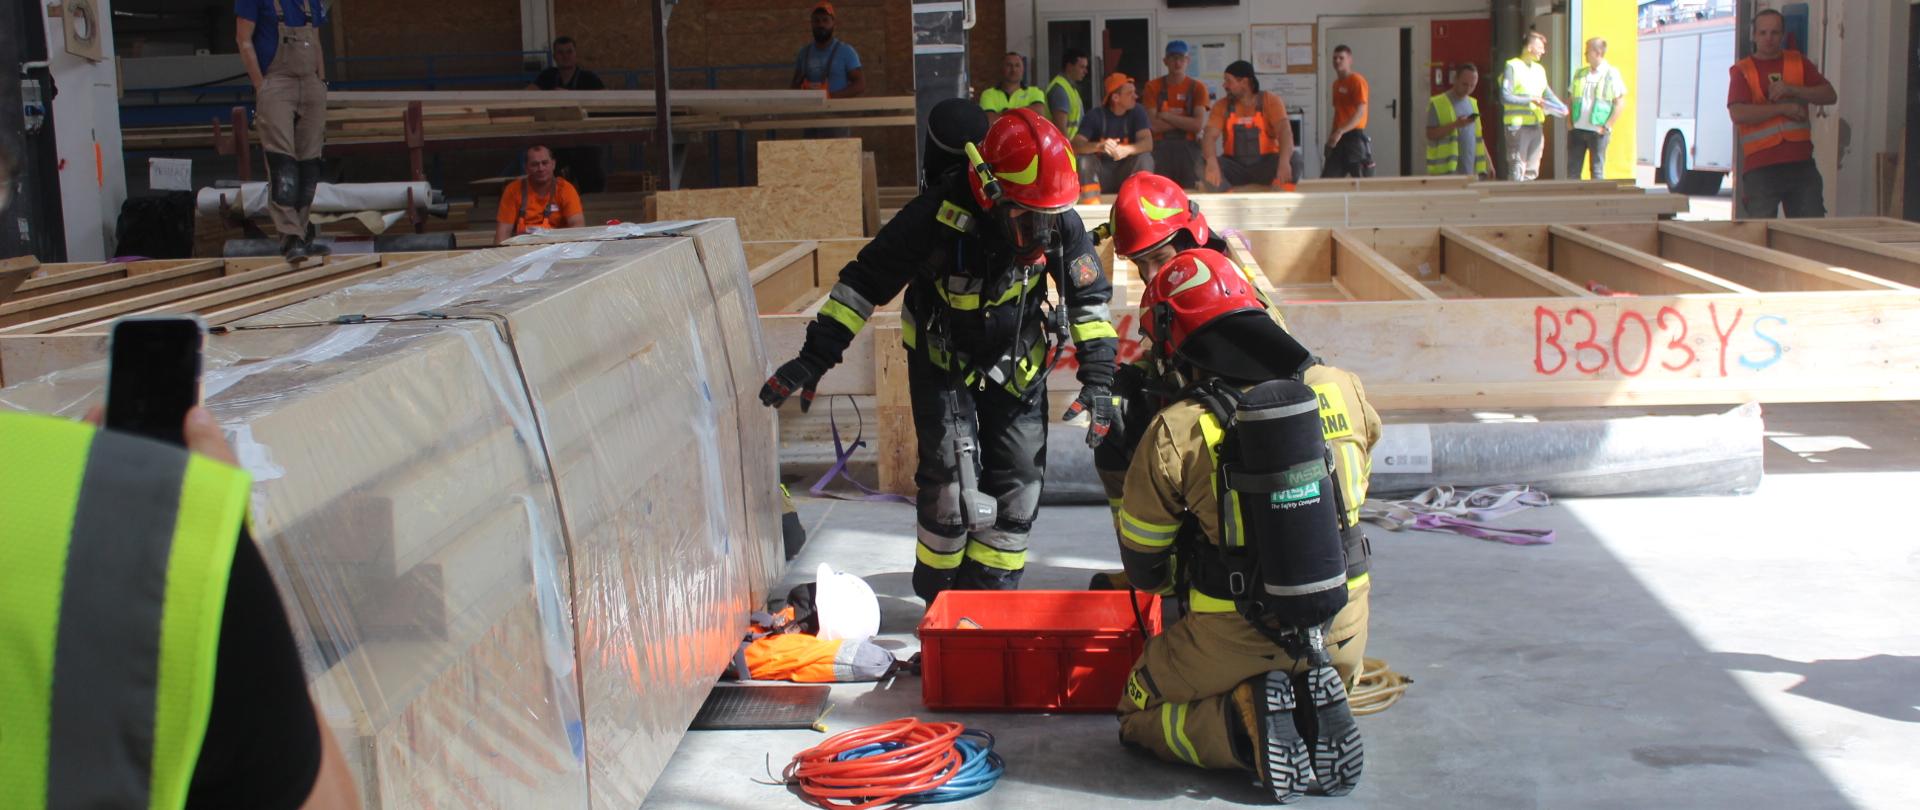 Ćwiczenia strażackie - strażacy podczas symulowanej akcji wydobywania spod ciężkiego elementu przygniecionej osoby.